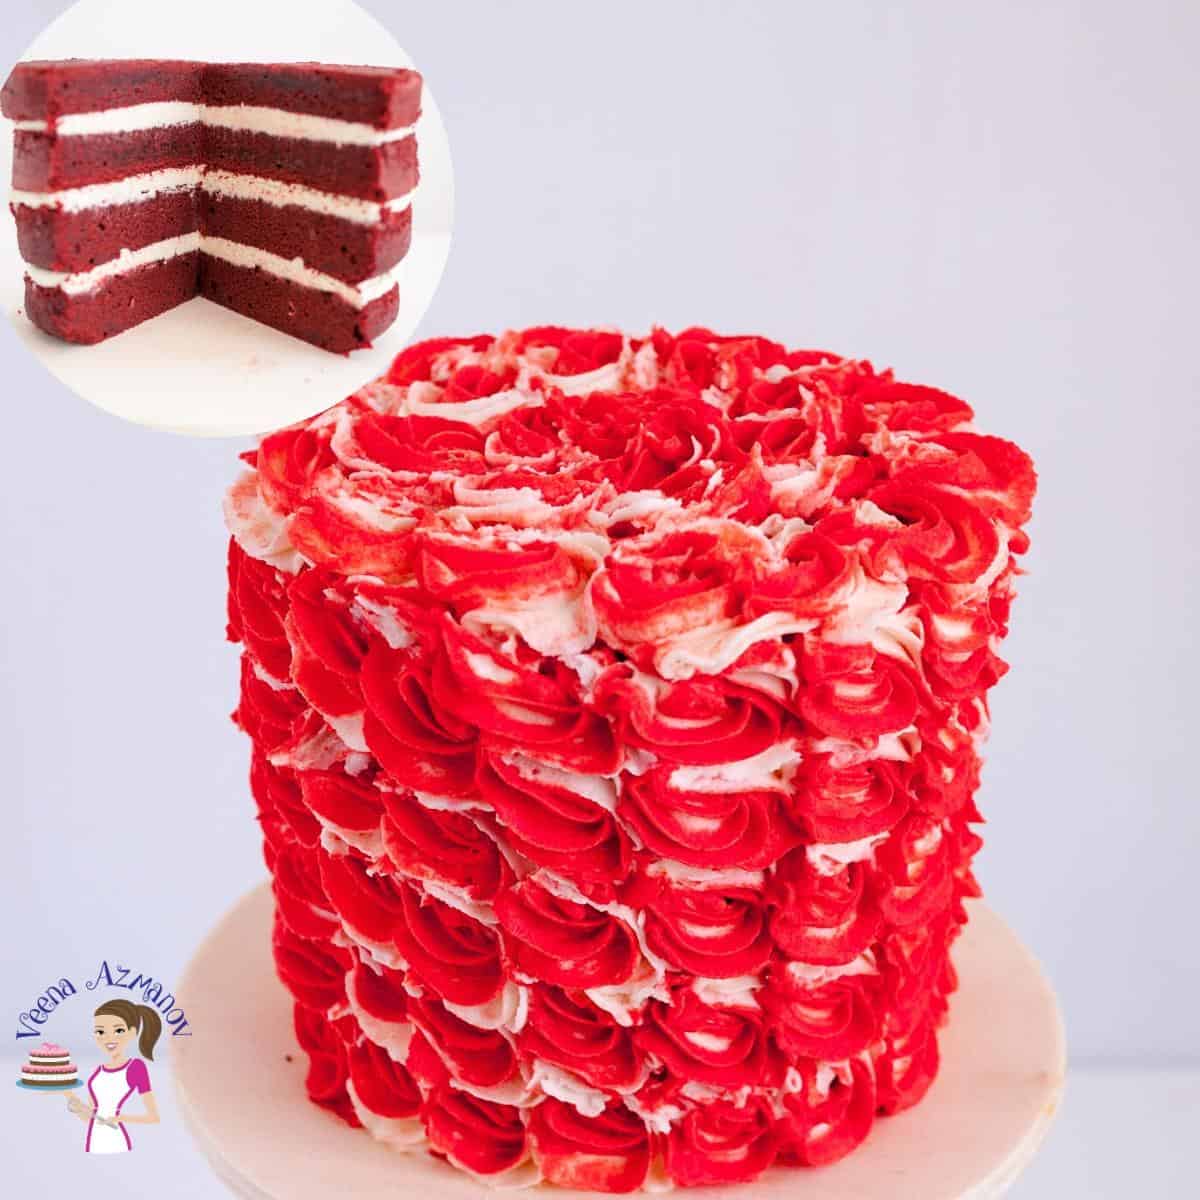 A red velvet buttercream cake.